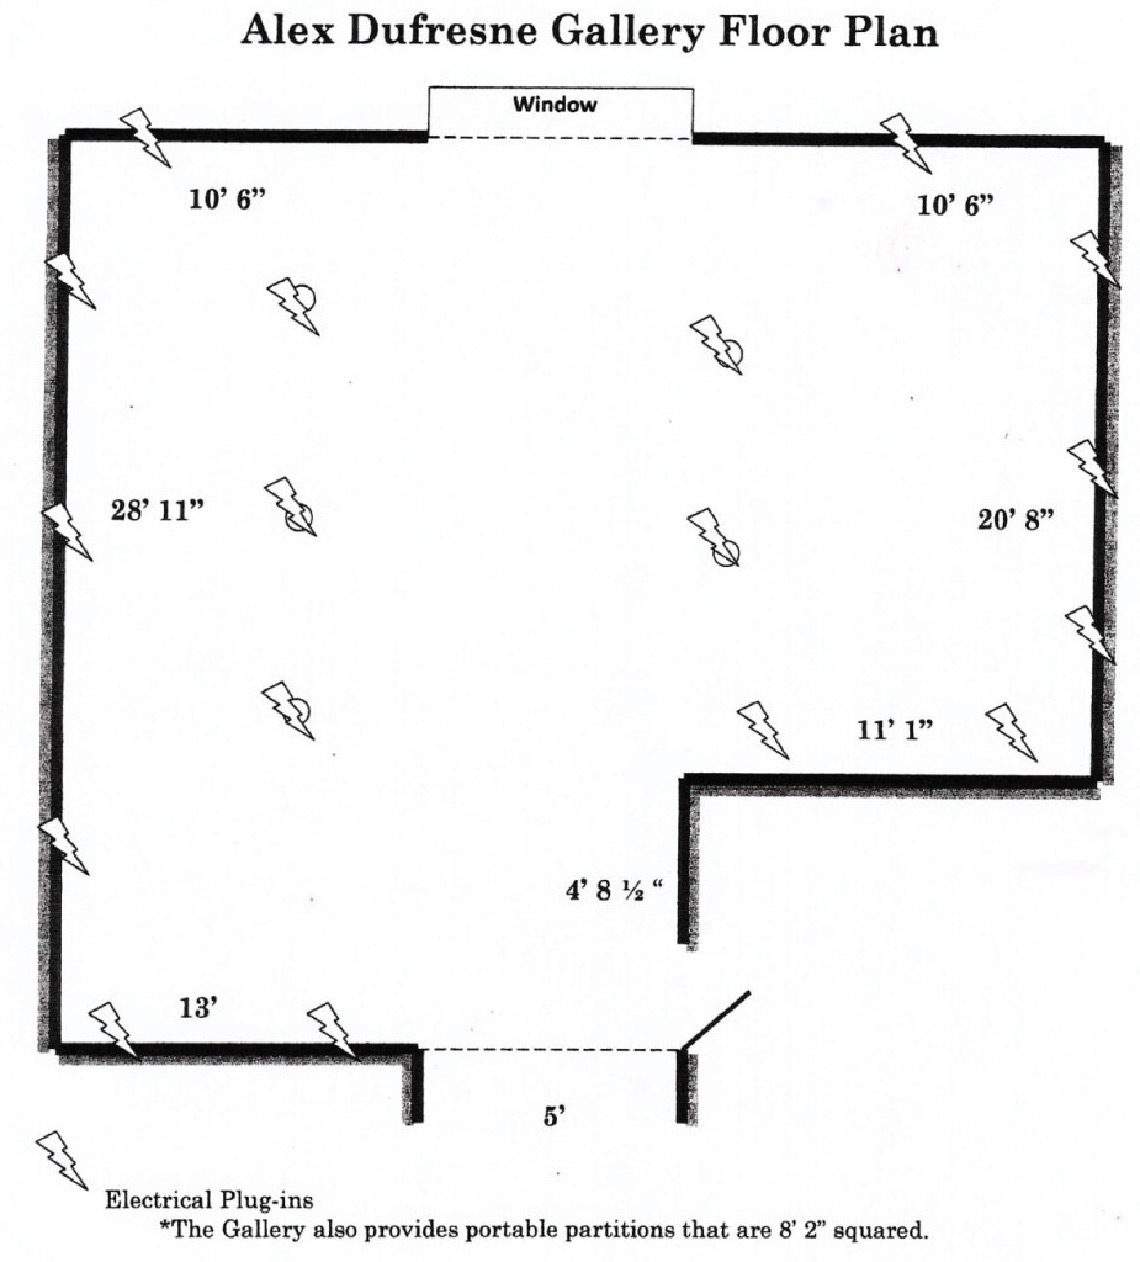 Floor plan of the Alex Dufresne Art Gallery